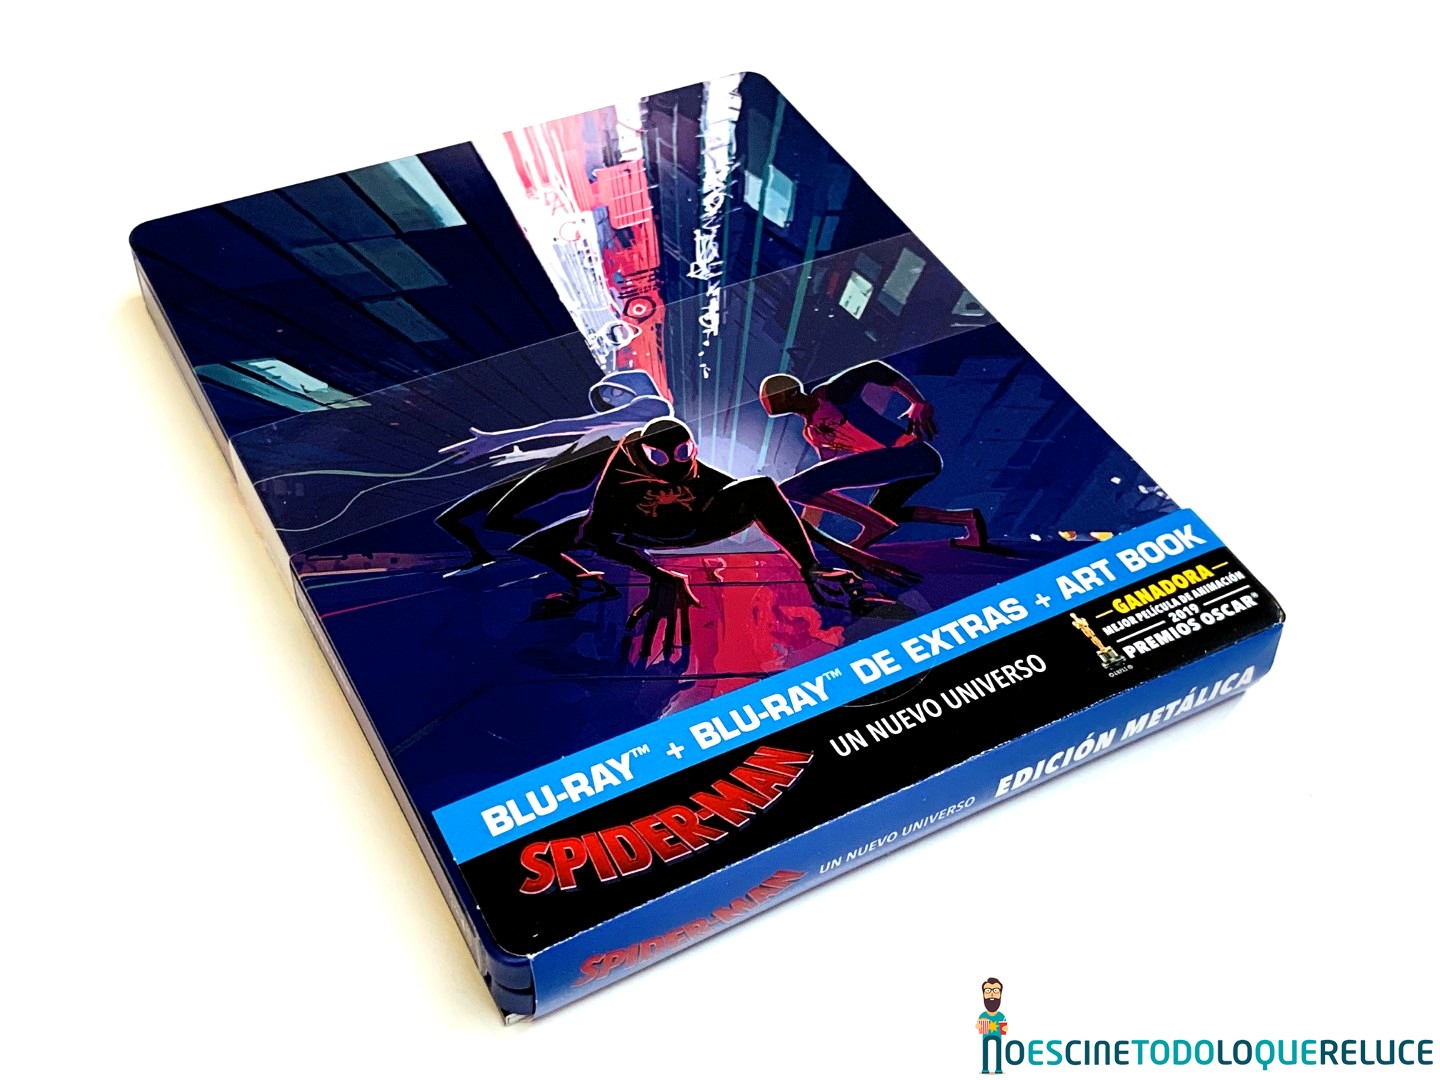 Spider-Man: Un nuevo Universo': Reportaje fotográfico y análisis de la  edición metálica (Blu-ray + BD Extras + Artbook)